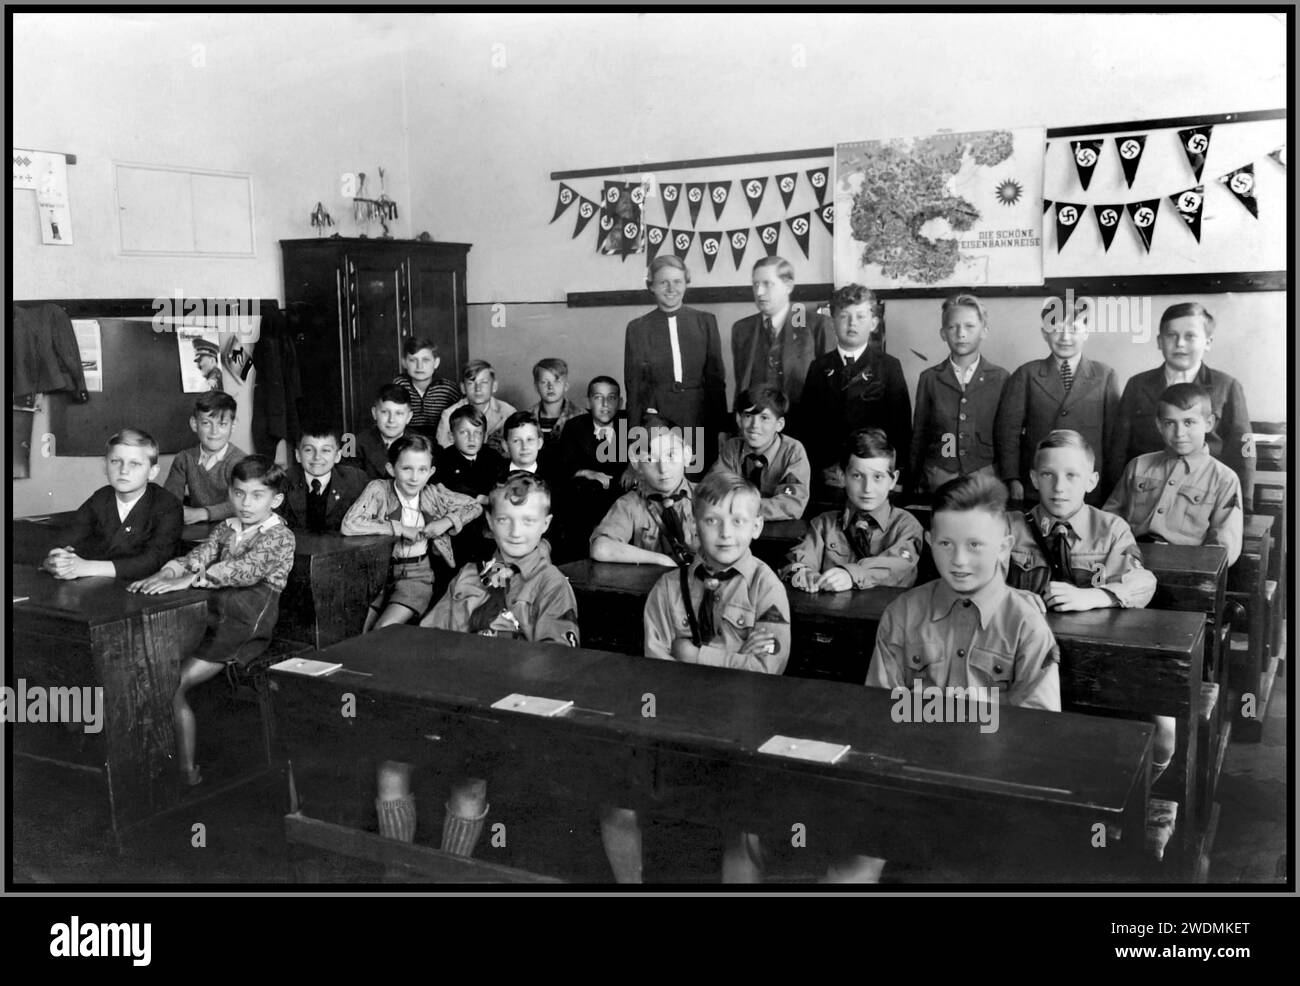 Nazi-Jugendschule der 1930er Jahre mit Hitler-Jugend Hitler-Jugend-Jungen in Uniorm im Klassenzimmer, mit Hakenkreuzfahnen dahinter, Radikalisierung in der Schulbildung 1930er Jahre Nazi-Deutschland Stockfoto